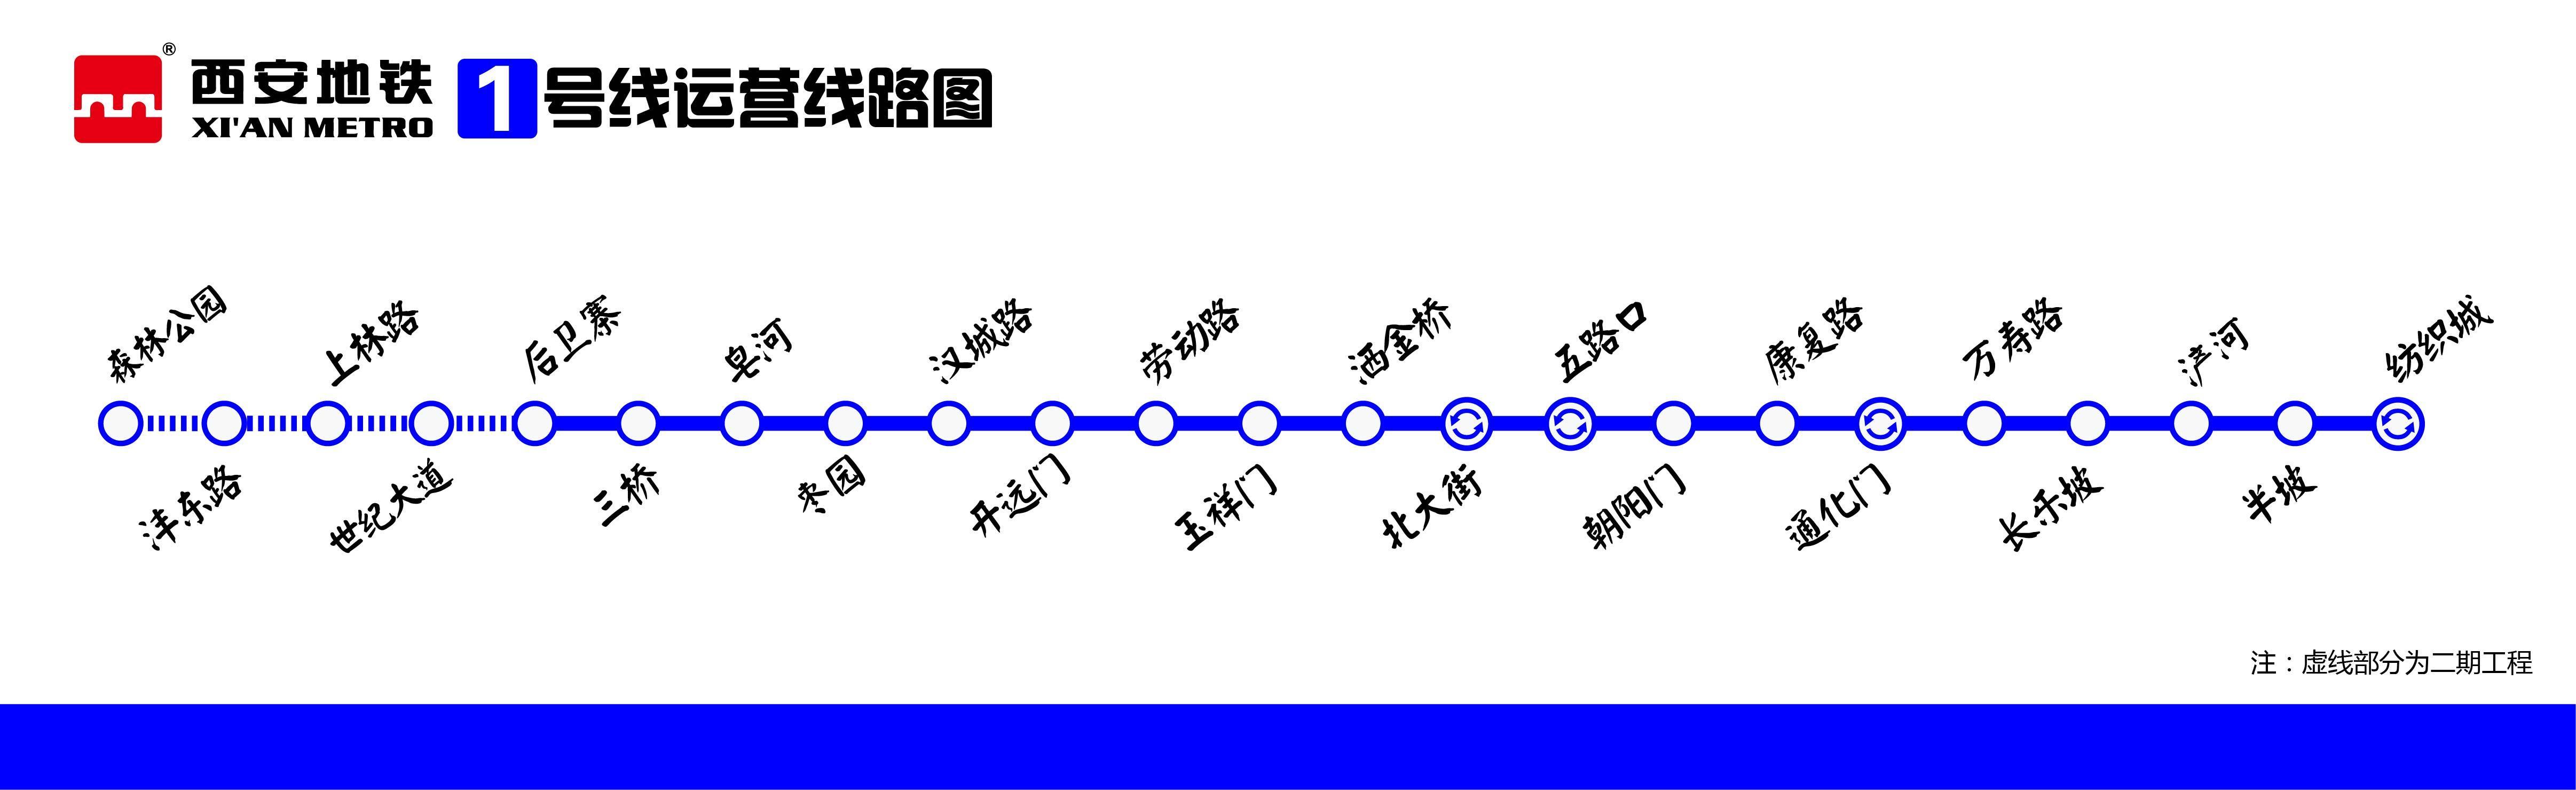 西安地铁2006-2018年规划图-地铁知道网